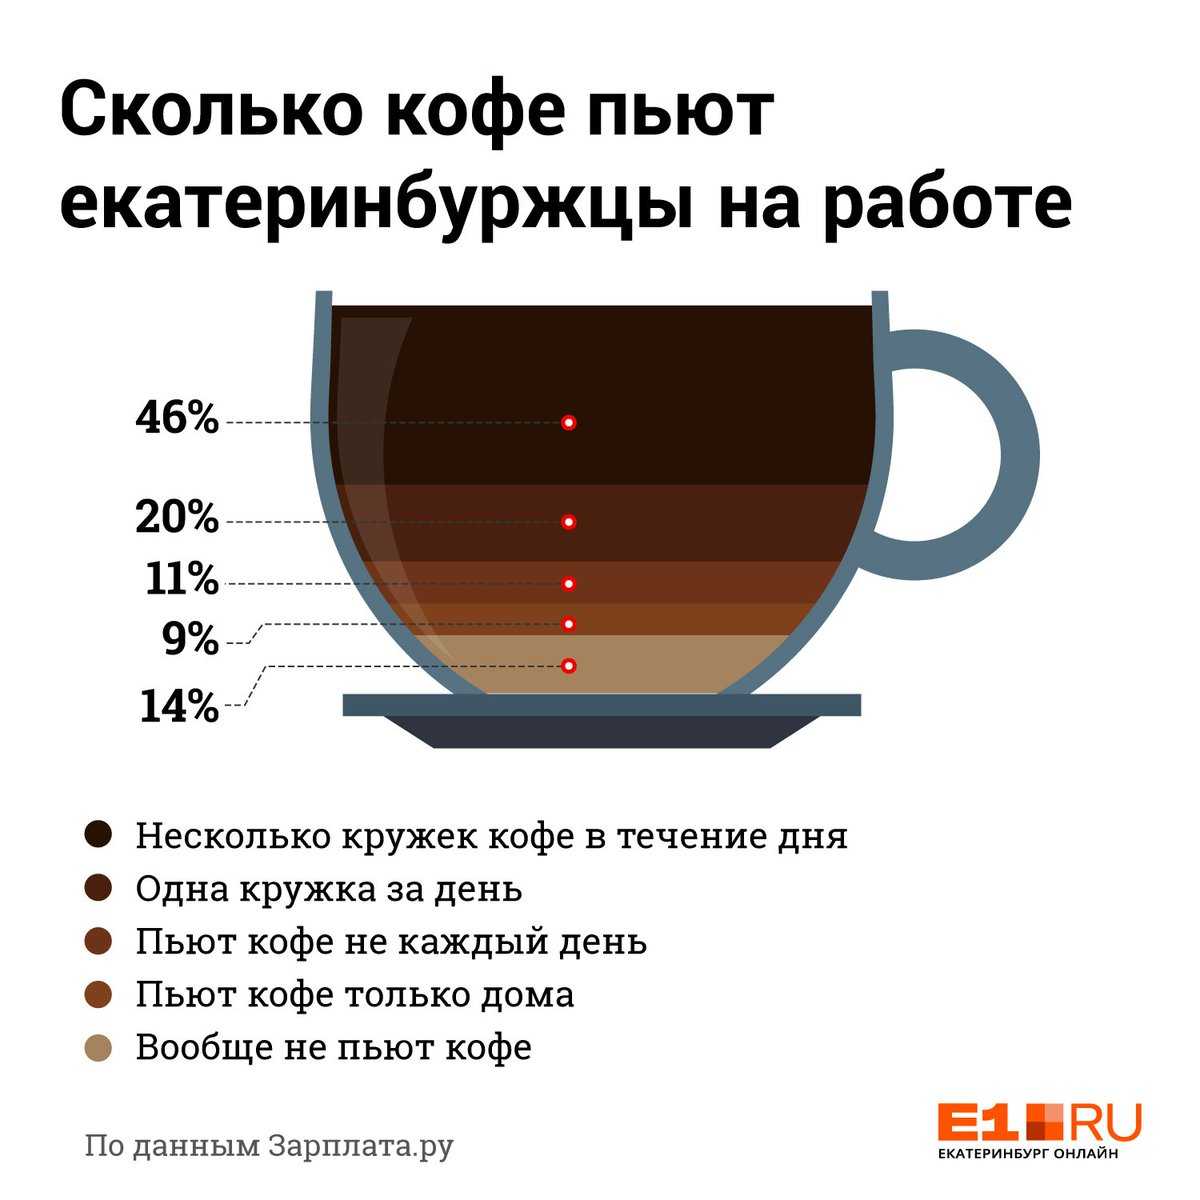 Кофе стимулирует умственную деятельность и повышает работоспособность Но имеет свои минусы: обезвоживание, повышение артериального давления BeautyHack разбирается, кому и сколько можно пить кофе